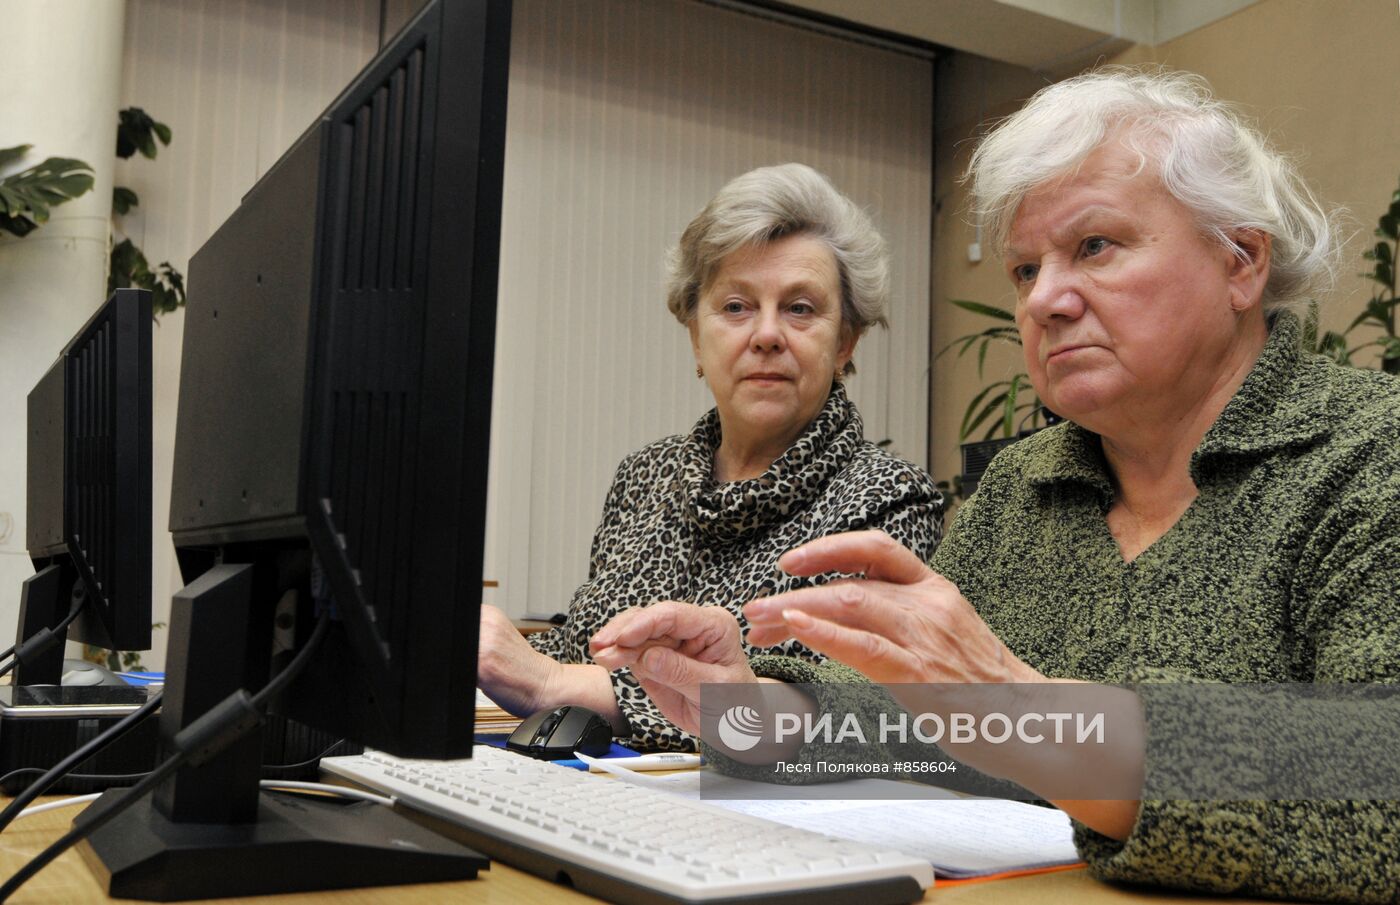 Социальная программа "Бабушка-онлайн - Дедушка-онлайн"